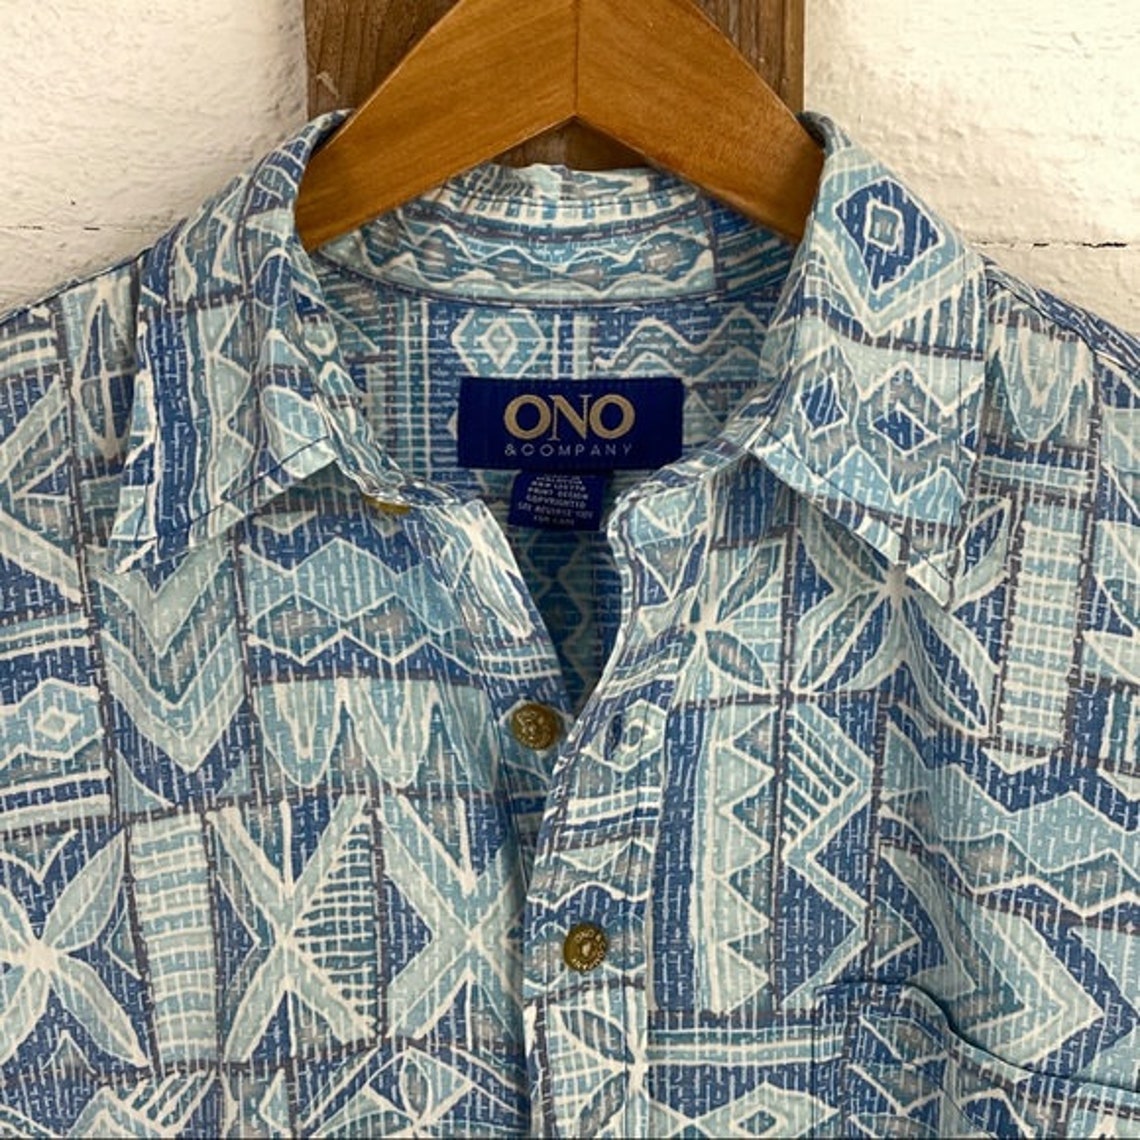 Vintage Ono & Company Authentic Hawaiian Shirt | Etsy